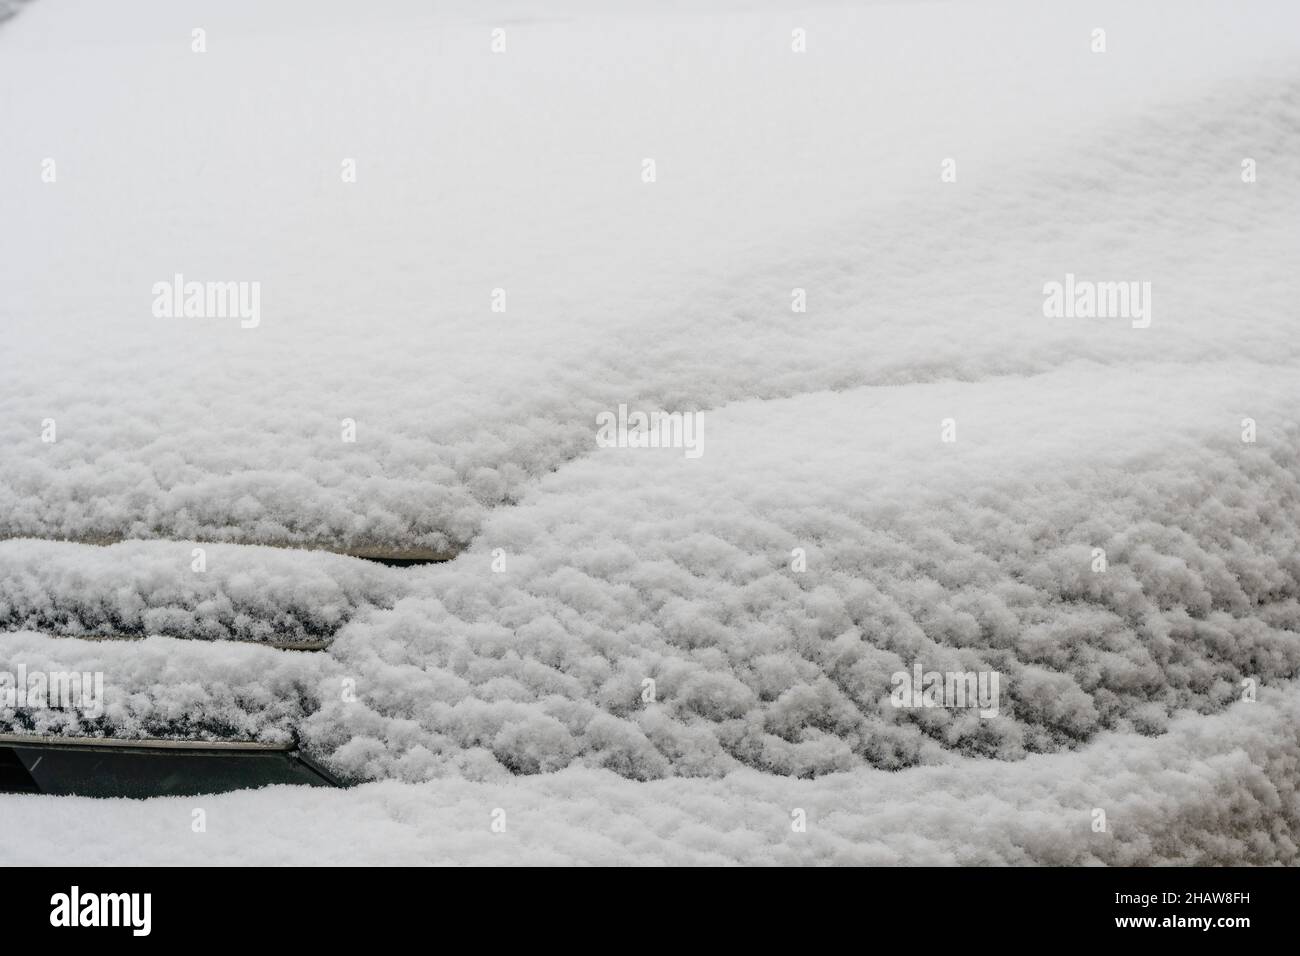 Voiture enneigée.Neige fraîche sur la voiture en hiver matin froid.Concept de conduite en hiver avec de la neige sur route.Saison d'hiver.Copier l'espace. Banque D'Images